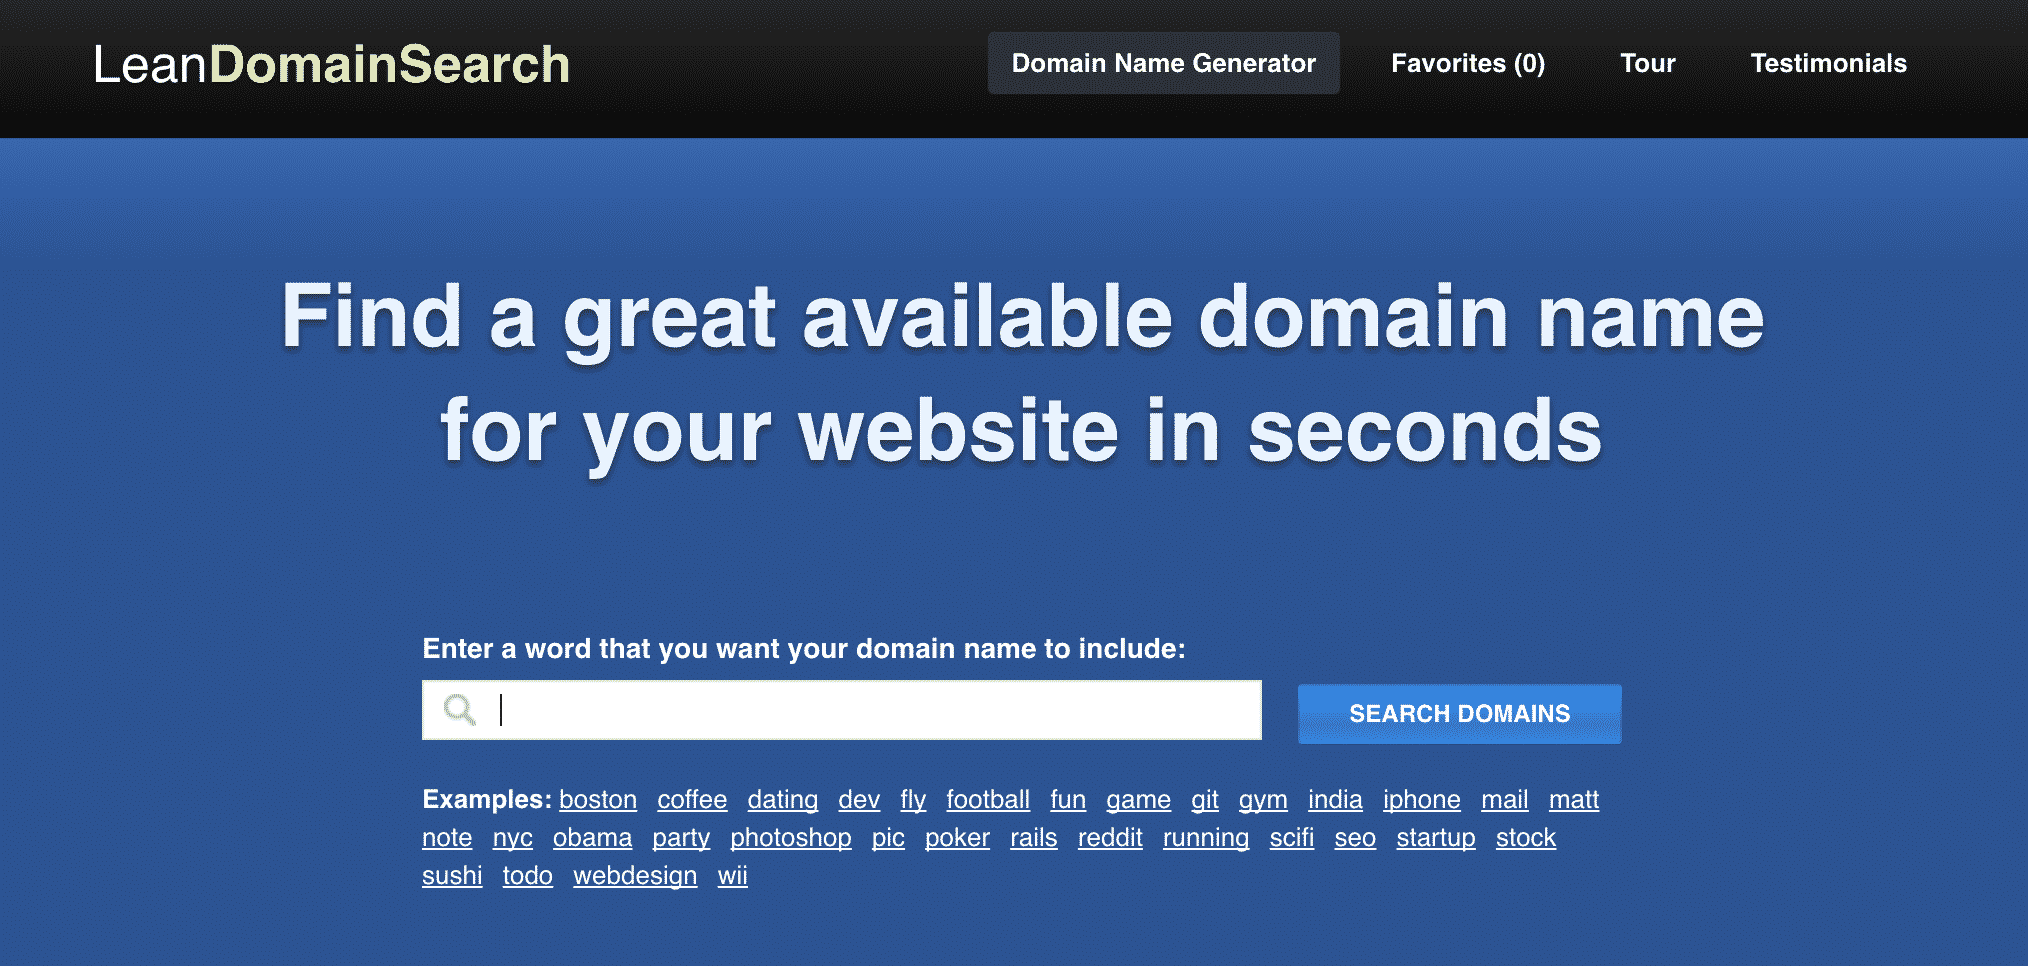 Lean Domain Search 